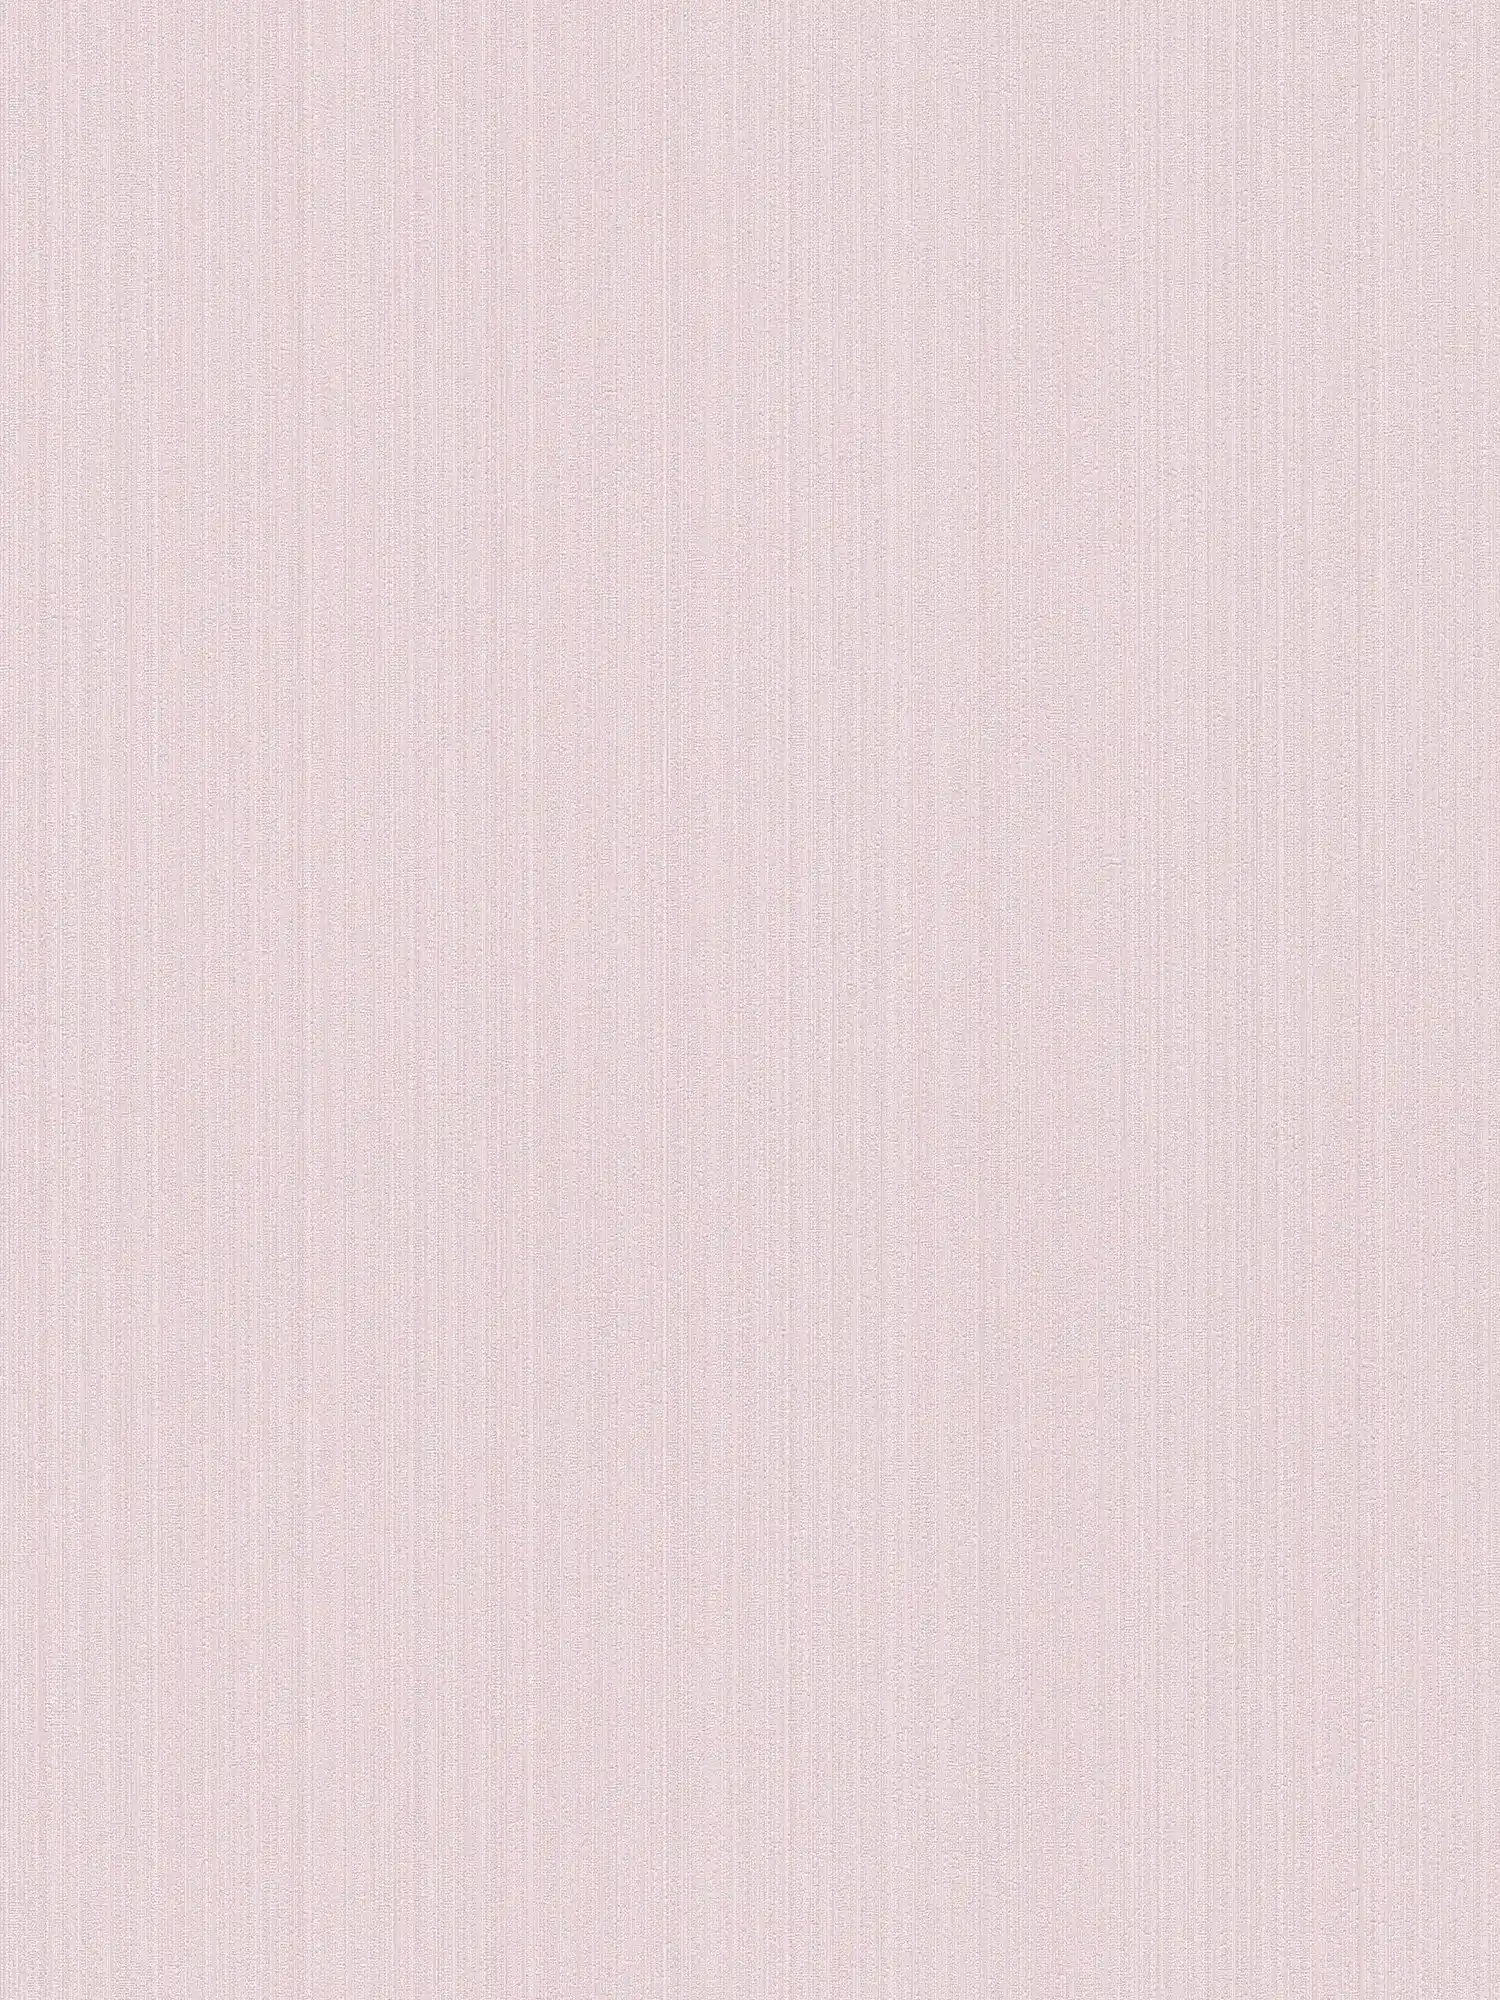 Roze vliesbehang zijde mat, effen met structuur effect
